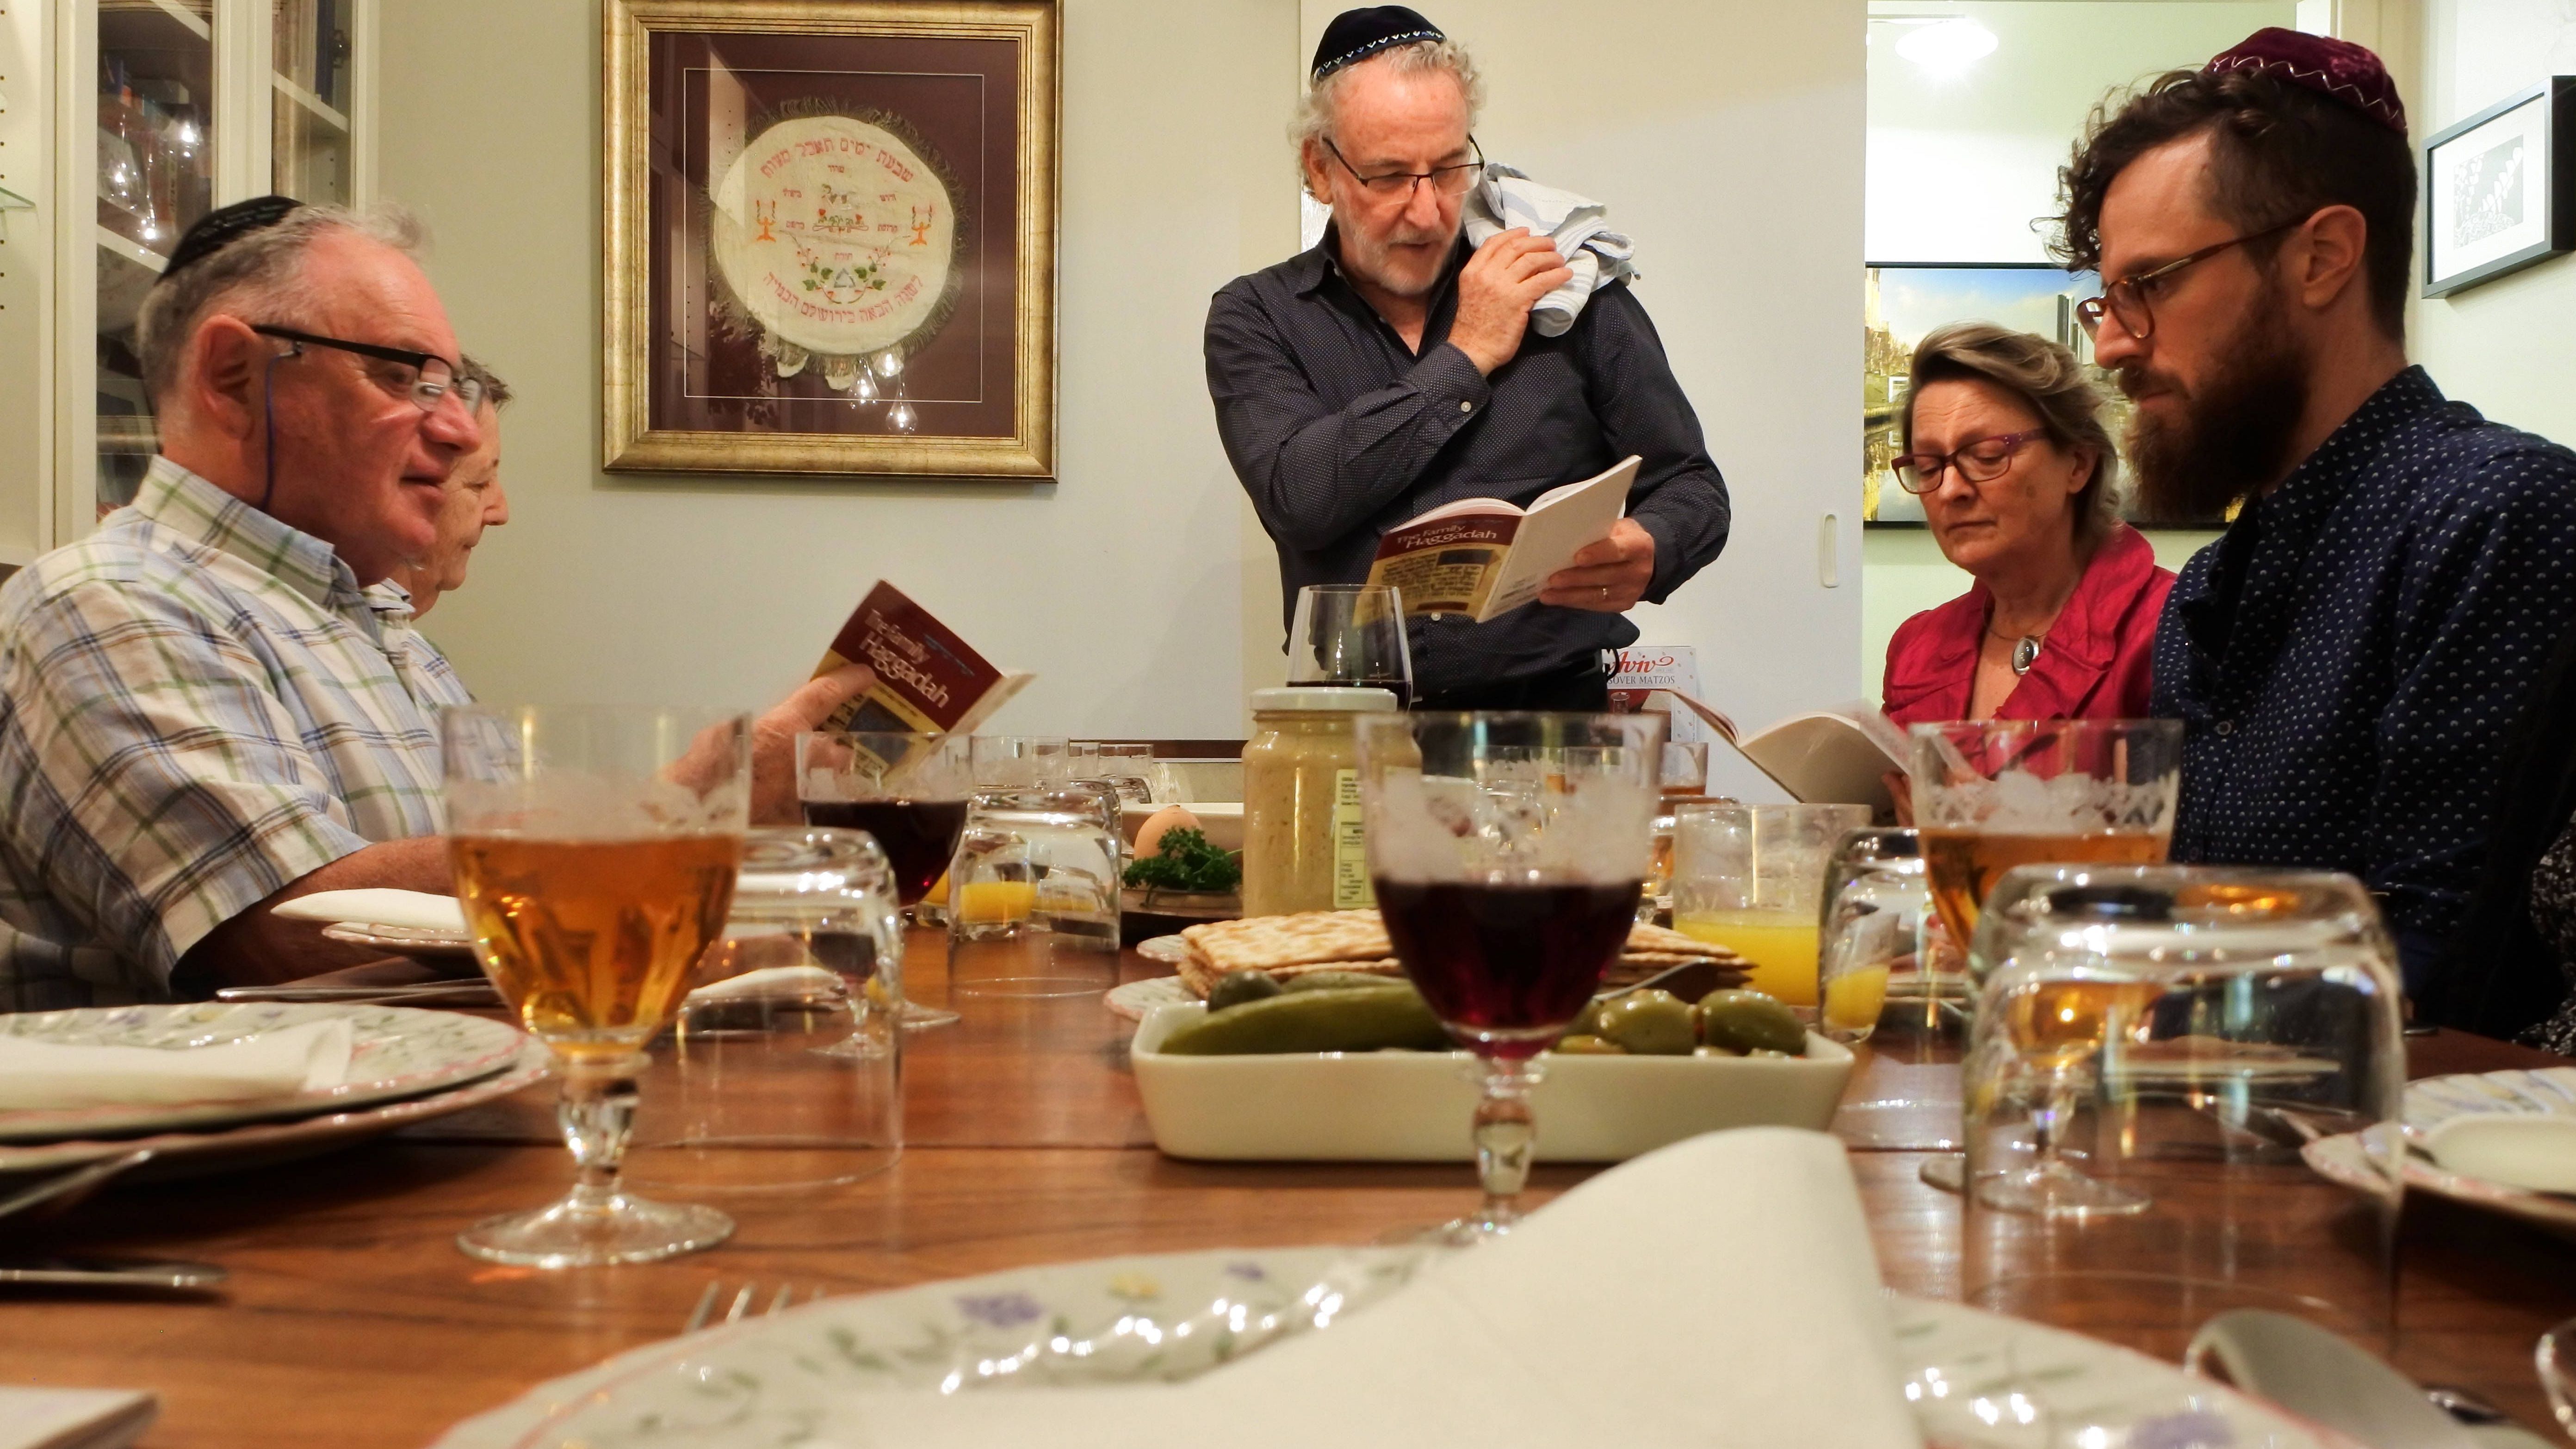 Am Seder-Abend sitzt die Familie gemeinsam am Tisch und liest aus der Haggada. Ein Buch mit Erzählungen über die Geschichte von der Befreiung des Volkes Israel aus der Sklaverei und dem Auszug aus Ägypten mit Bildern, Anleitungen, Erzählungen und Liedern zum Pessach.